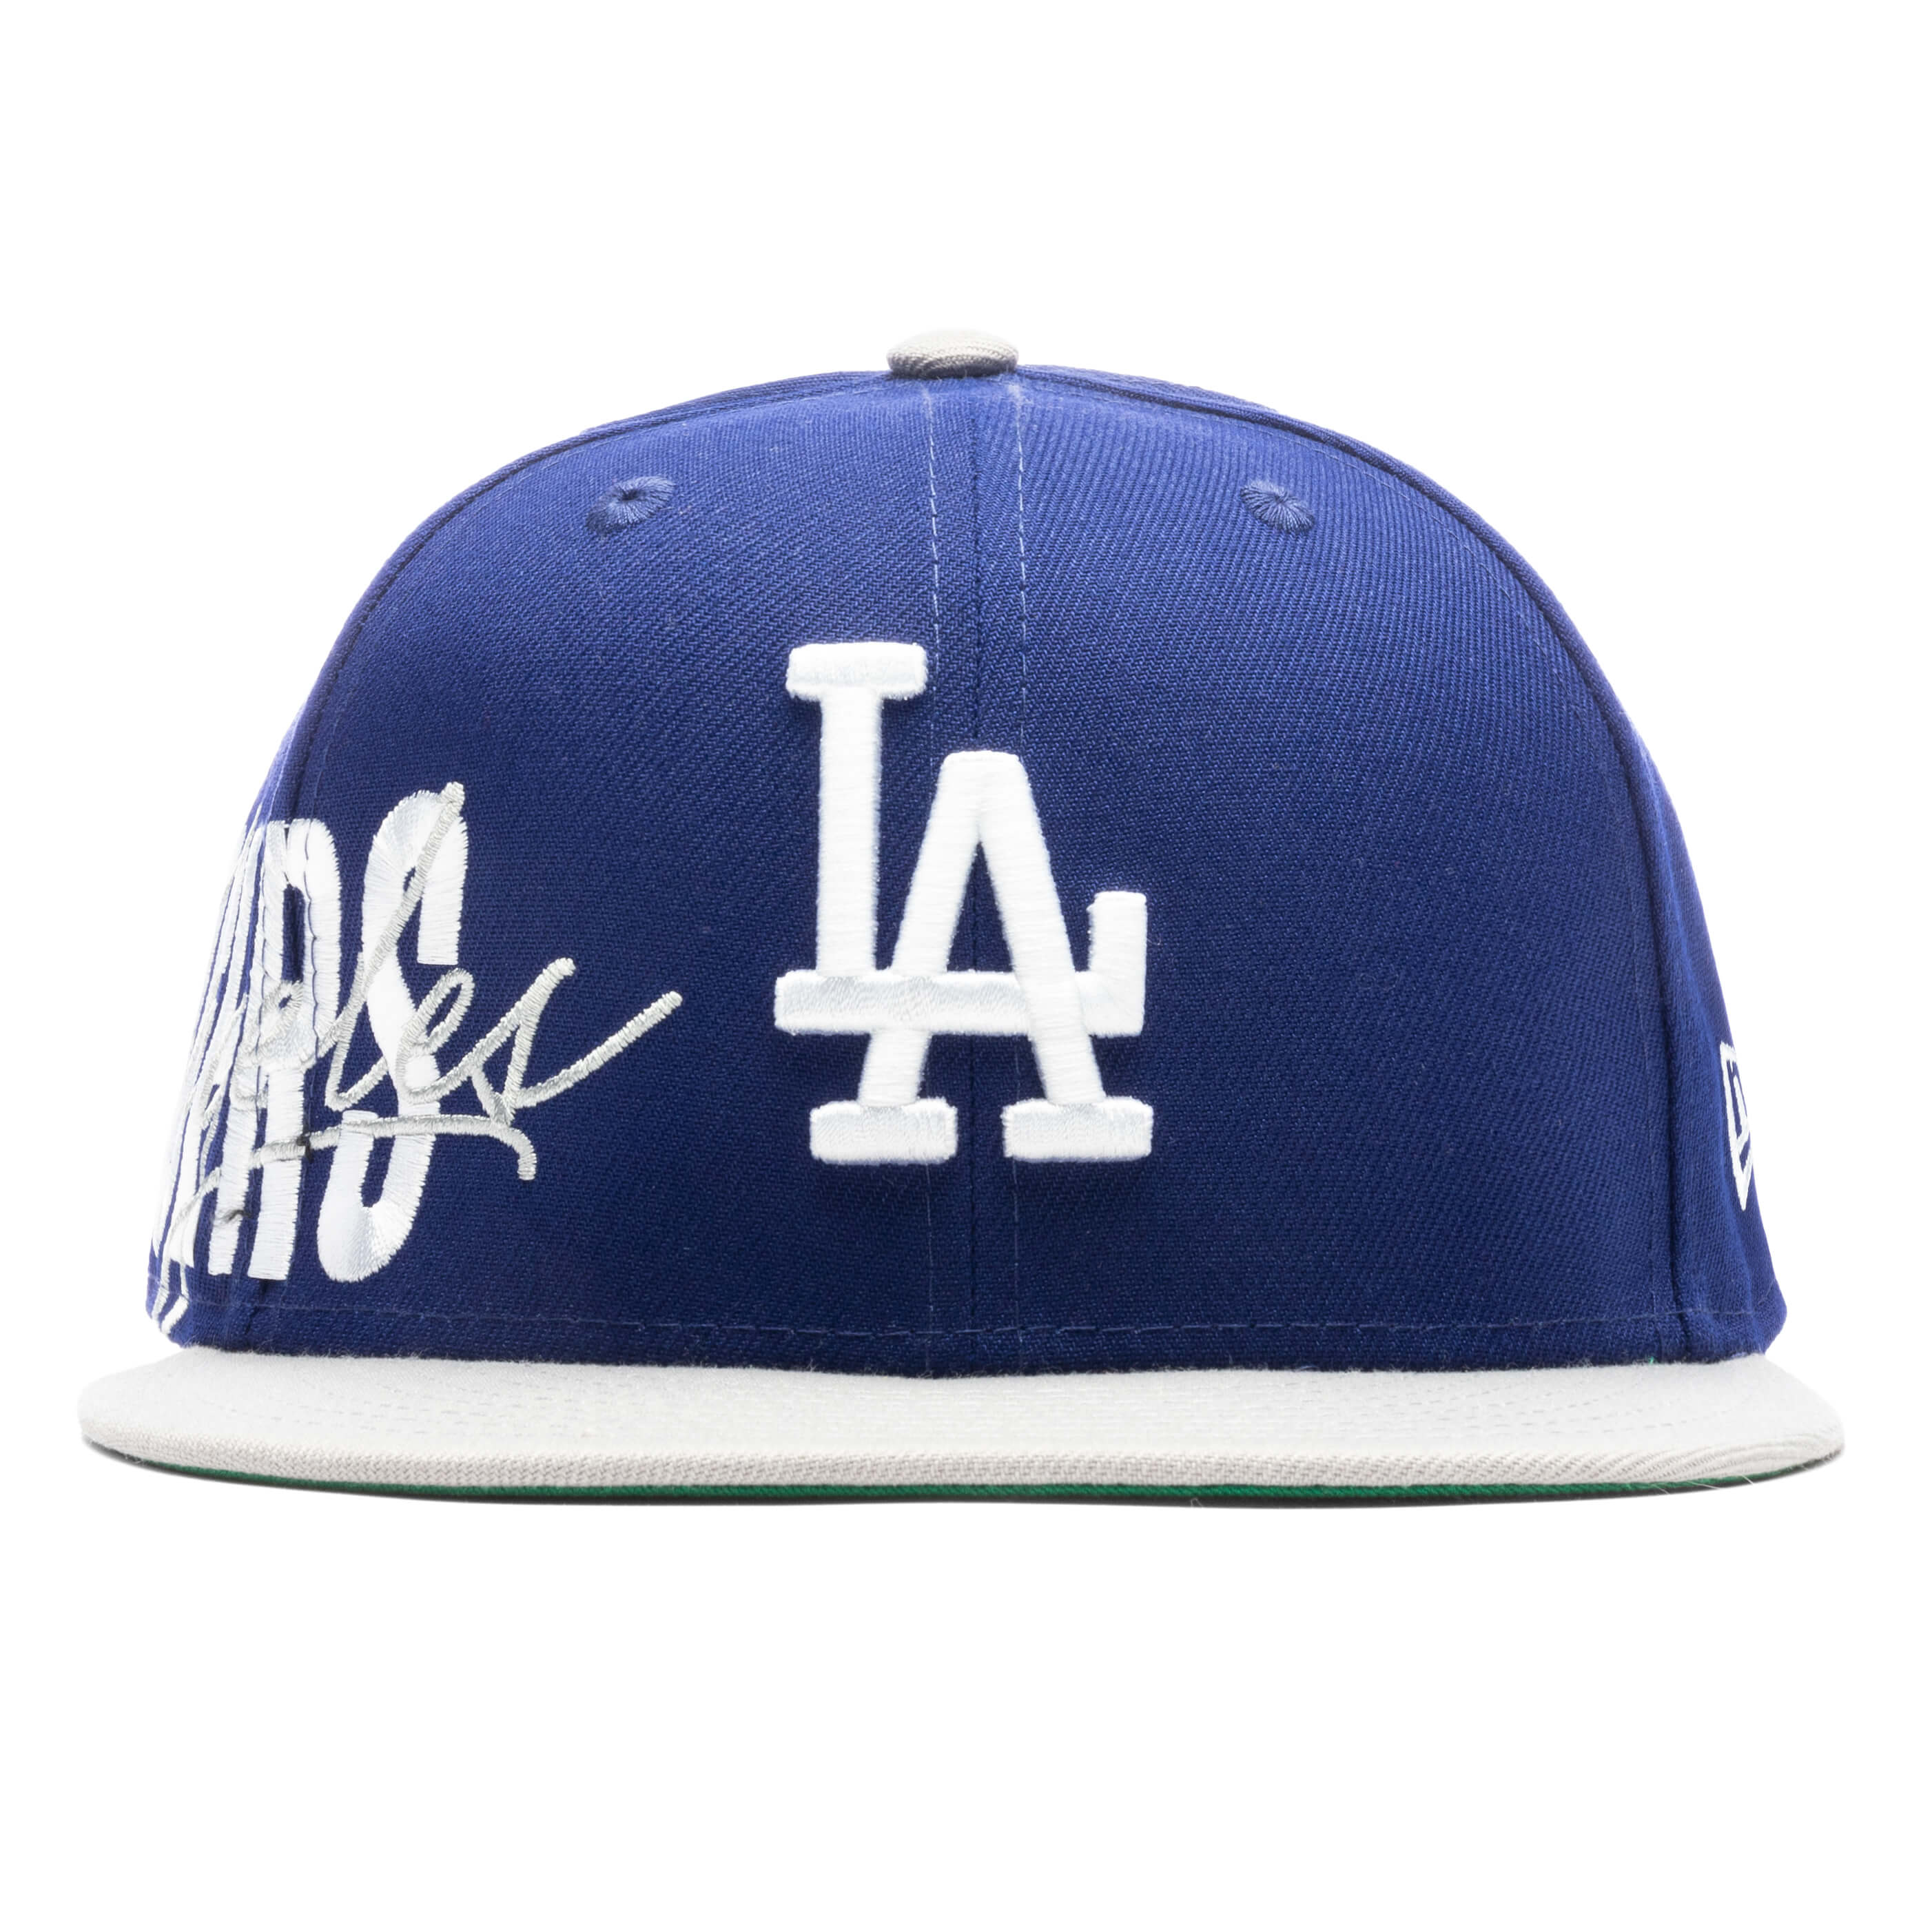 Sidefont 950 Adjustable - Los Angeles Dodgers, , large image number null